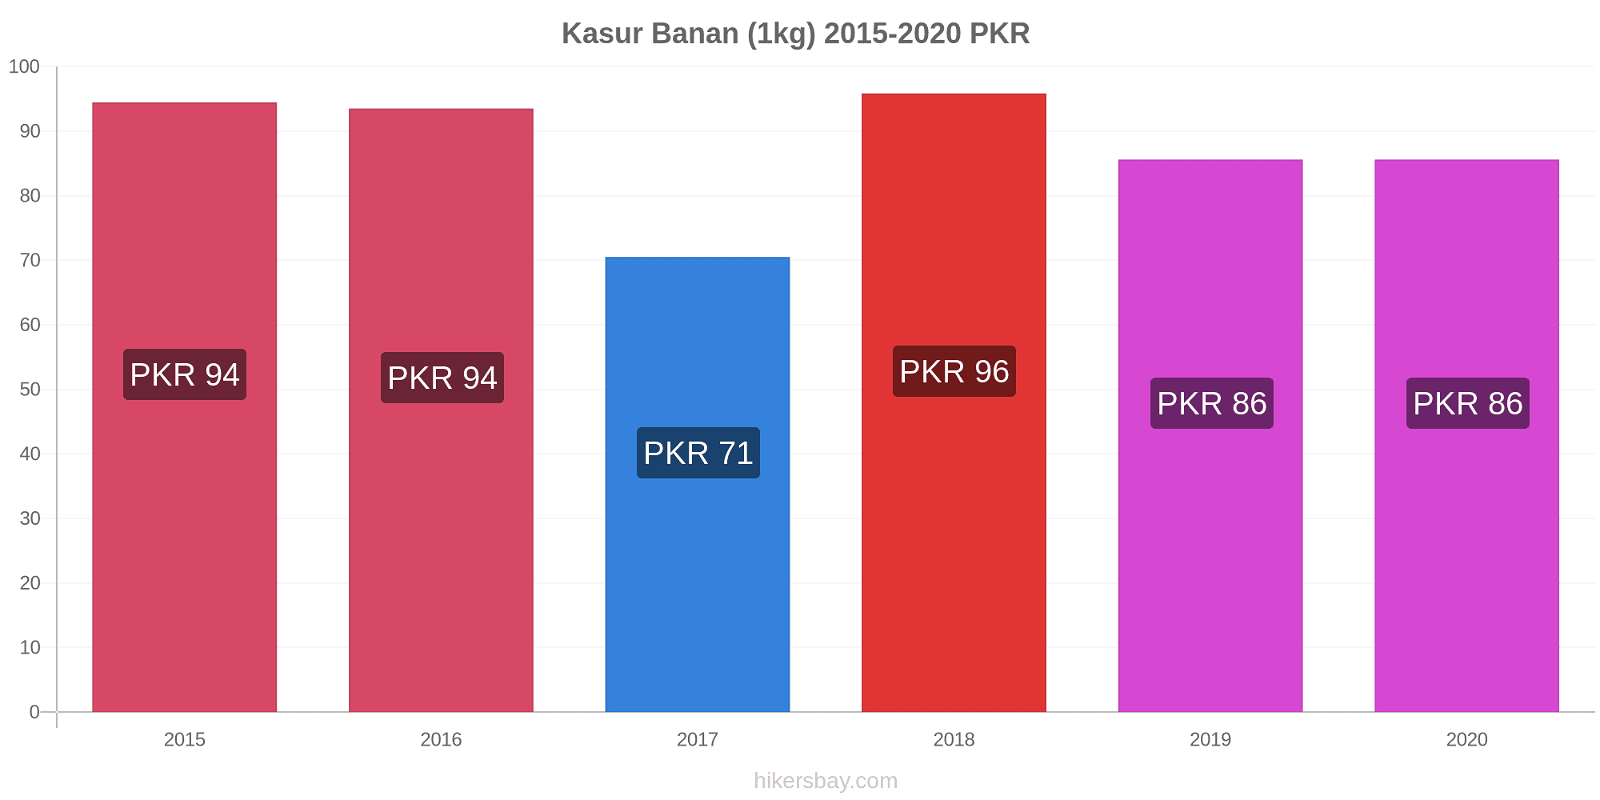 Kasur prisændringer Banan (1kg) hikersbay.com